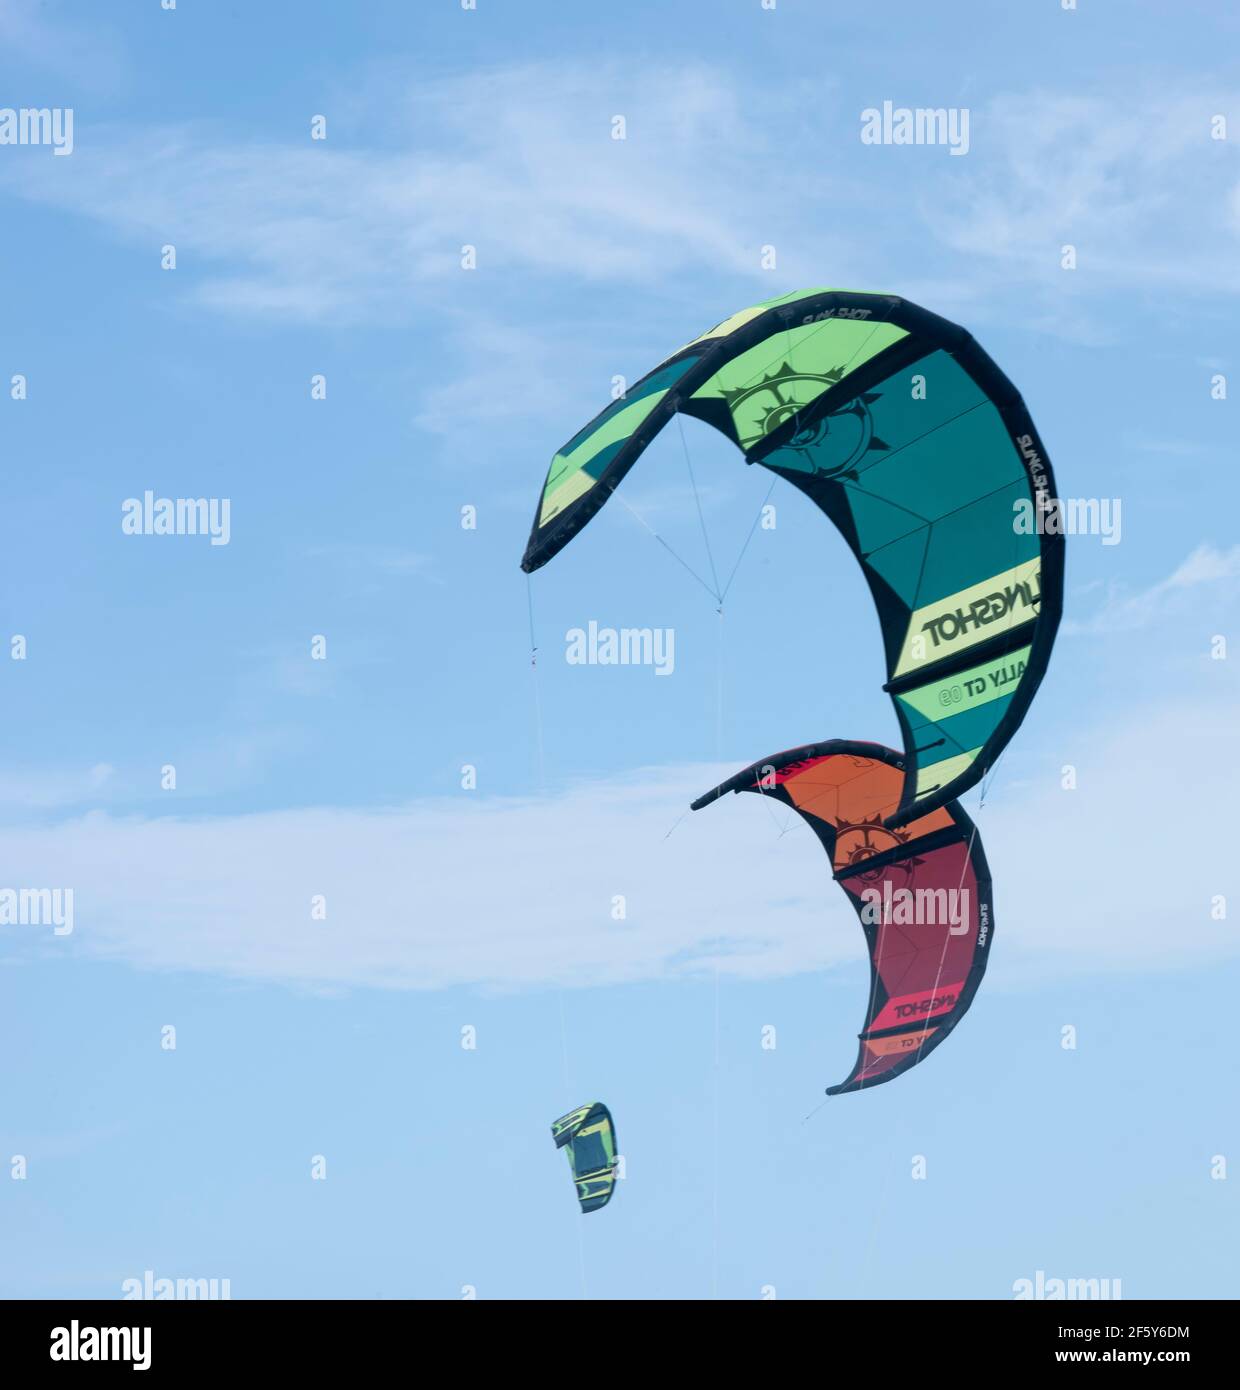 Volare a vela colorata per kite boarding nel cielo Foto Stock